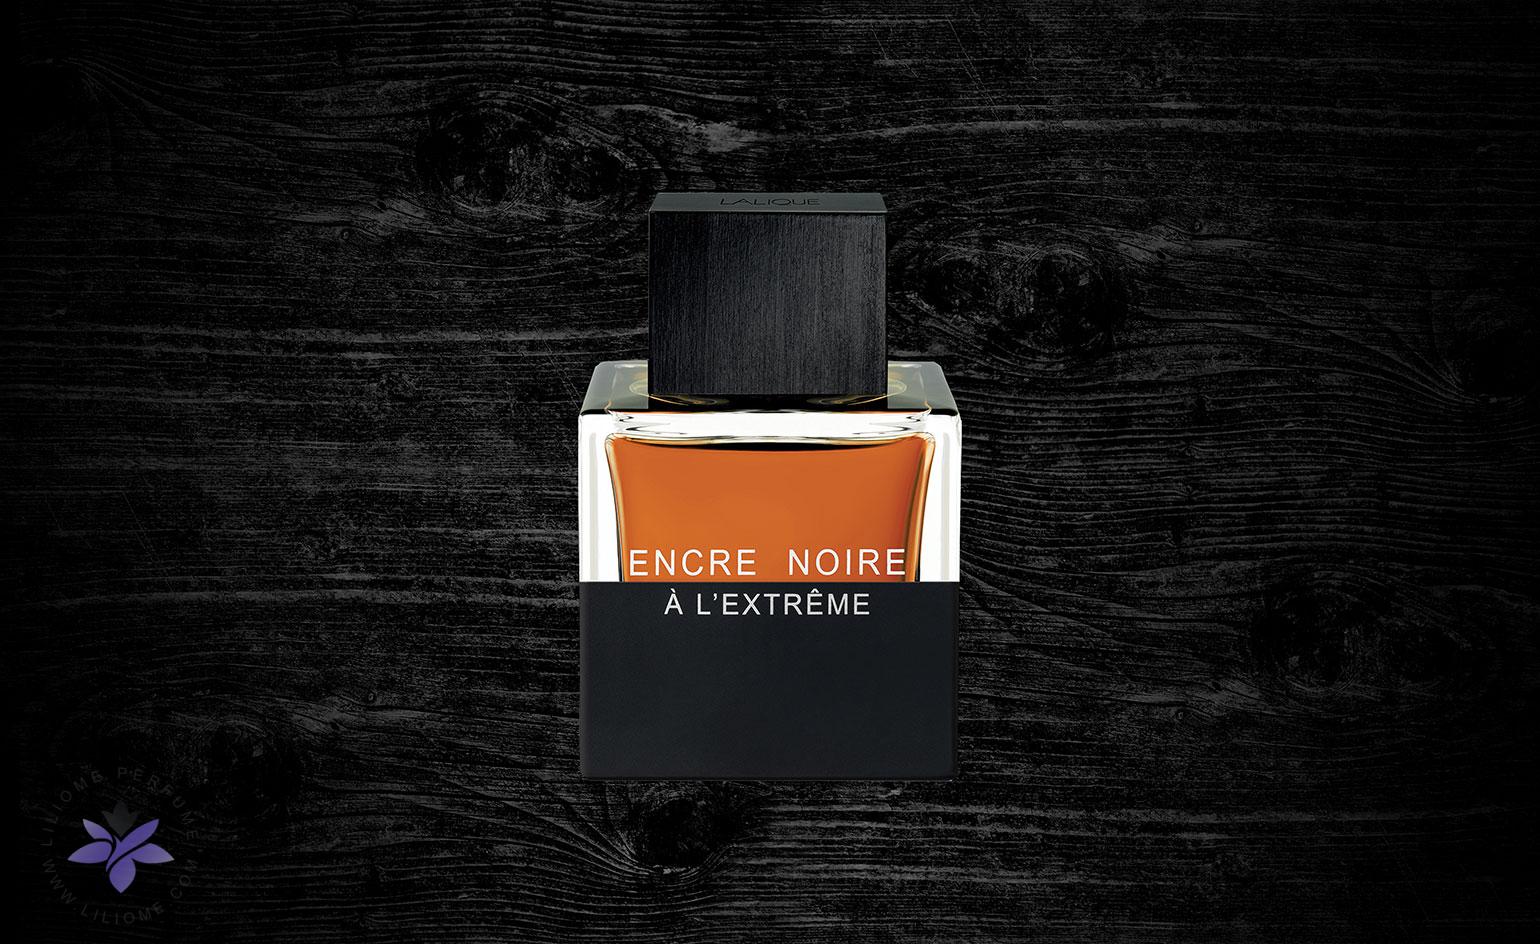 عطر لالیک انکر نویر ای ال اکستریم ، lalique Encre Noire A L Extreme - عطر لیلیوم